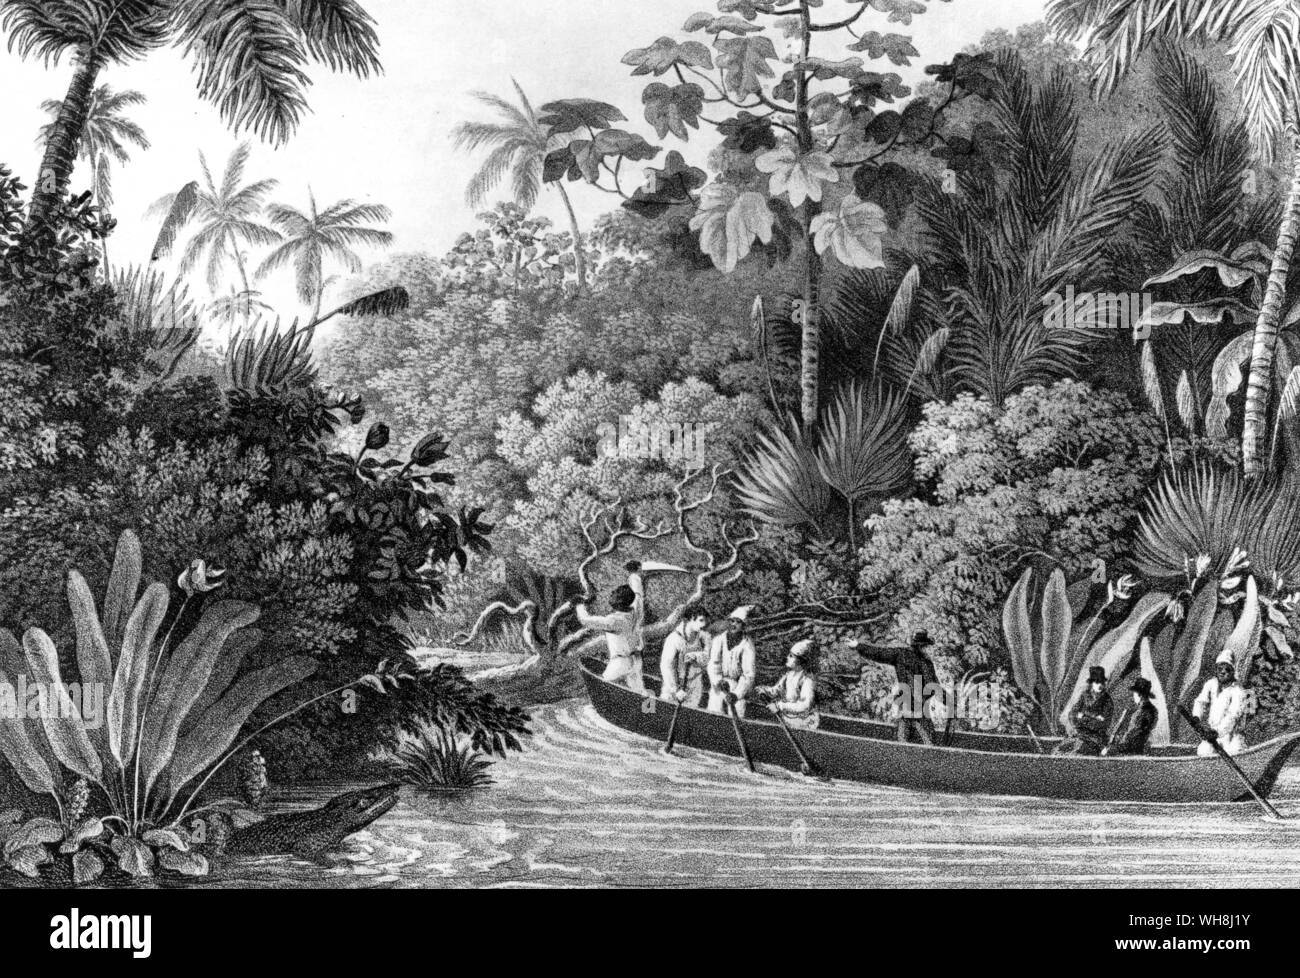 "El contraste de las palmeras crecen en medio de la ramificación común clases, nunca falla para dar a la escena un carácter inter-tropical." (cita) Darwin y el Beagle por Alan Moorhead, página 56. Foto de stock